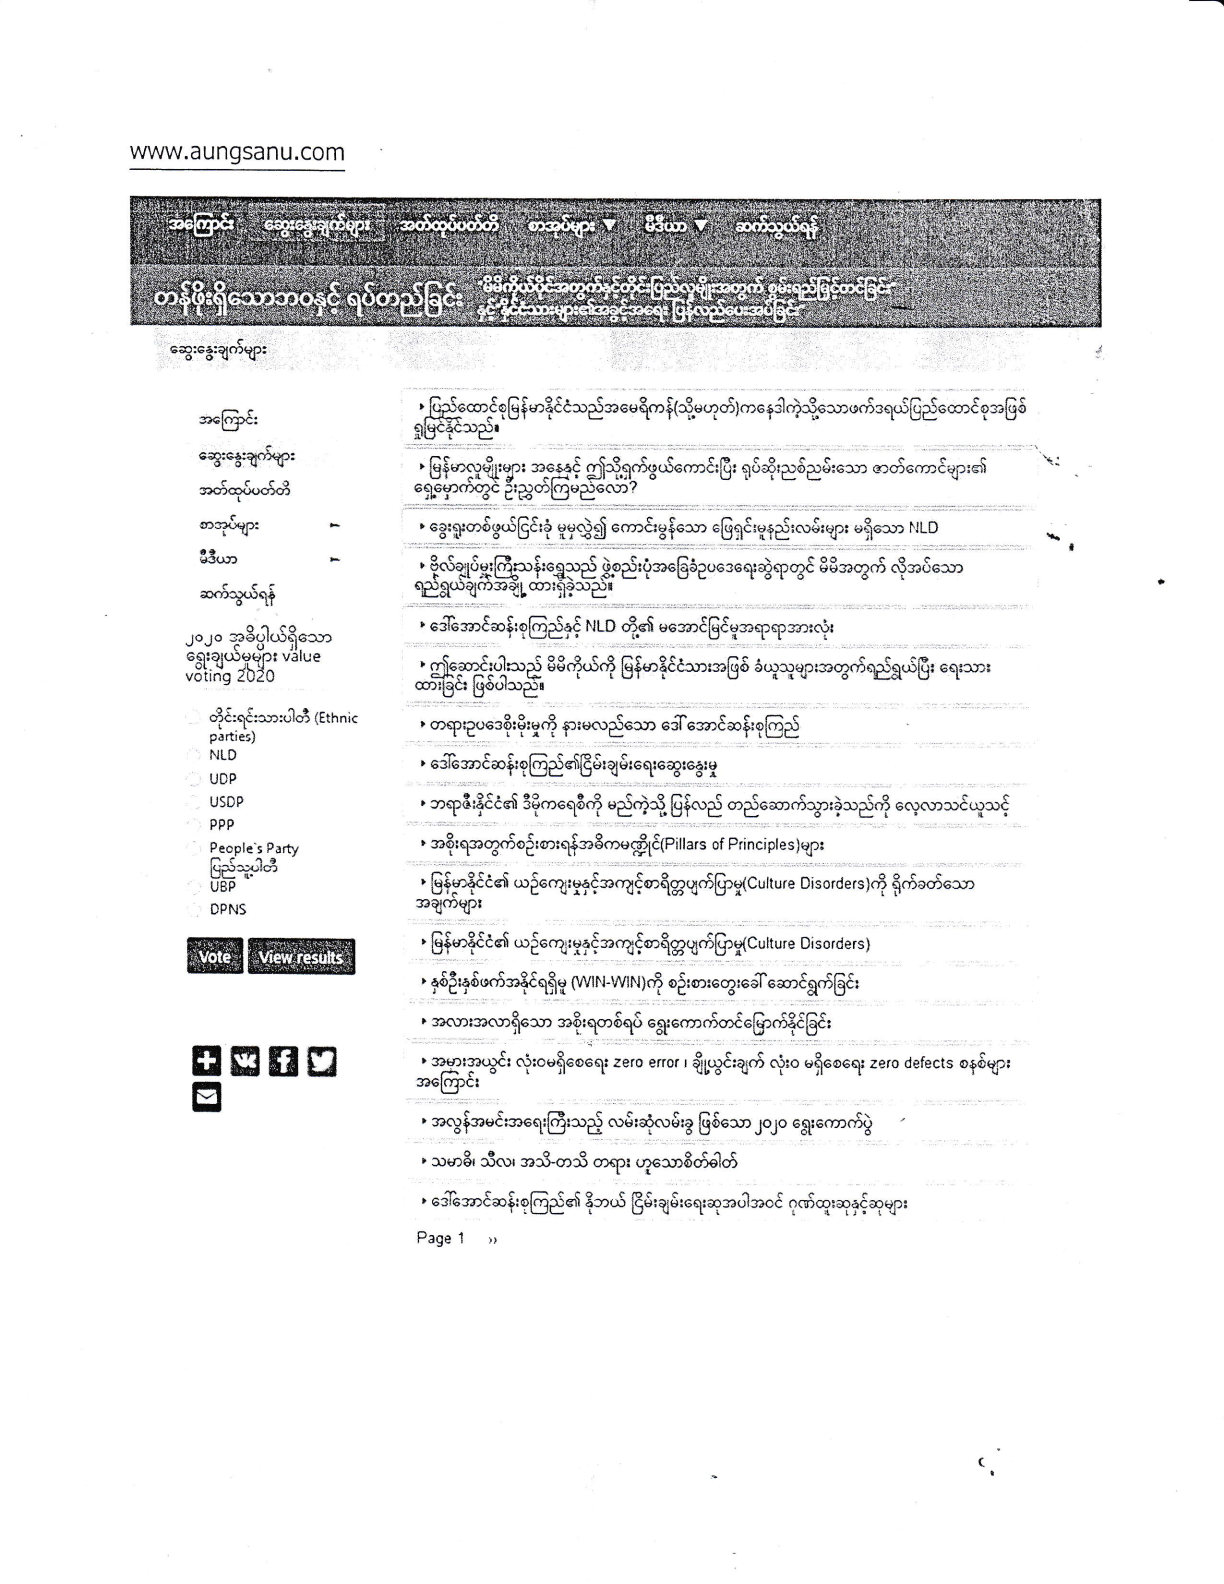 အာဏာရှင်စုကြည်အစိုးရ ကျွန်တော်၏ website ပိတ်ပင်ခြင်း အမိန့်စာ 